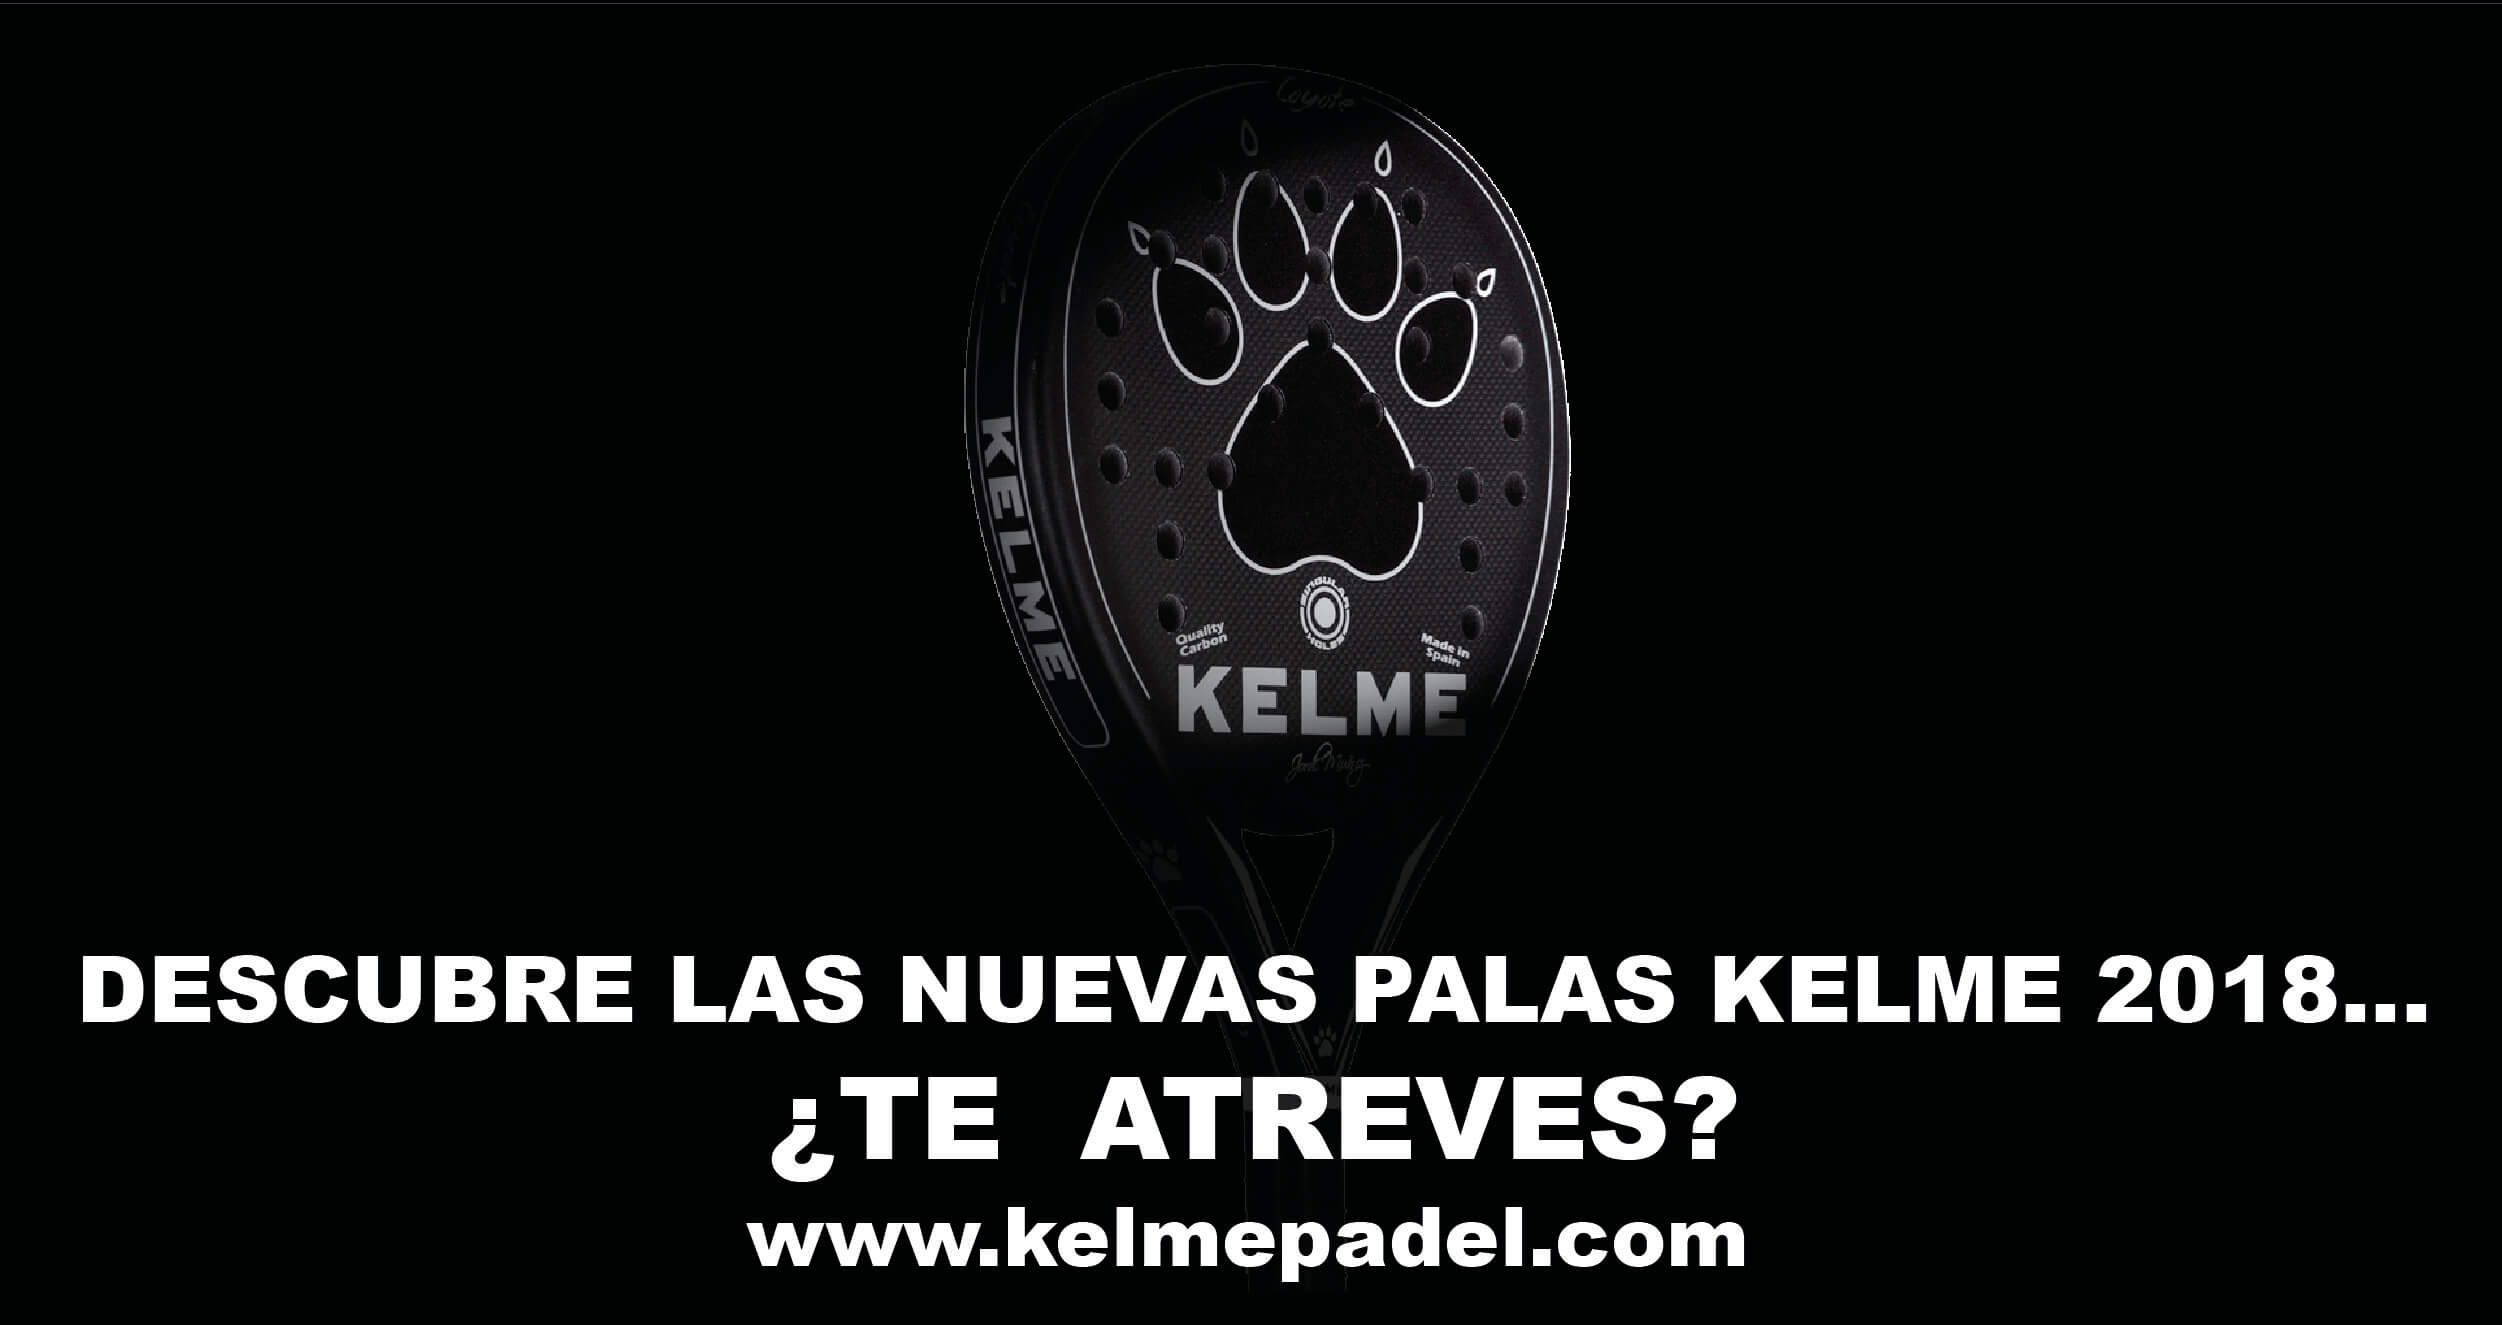 Kelme Padel 2018… soon in stores!